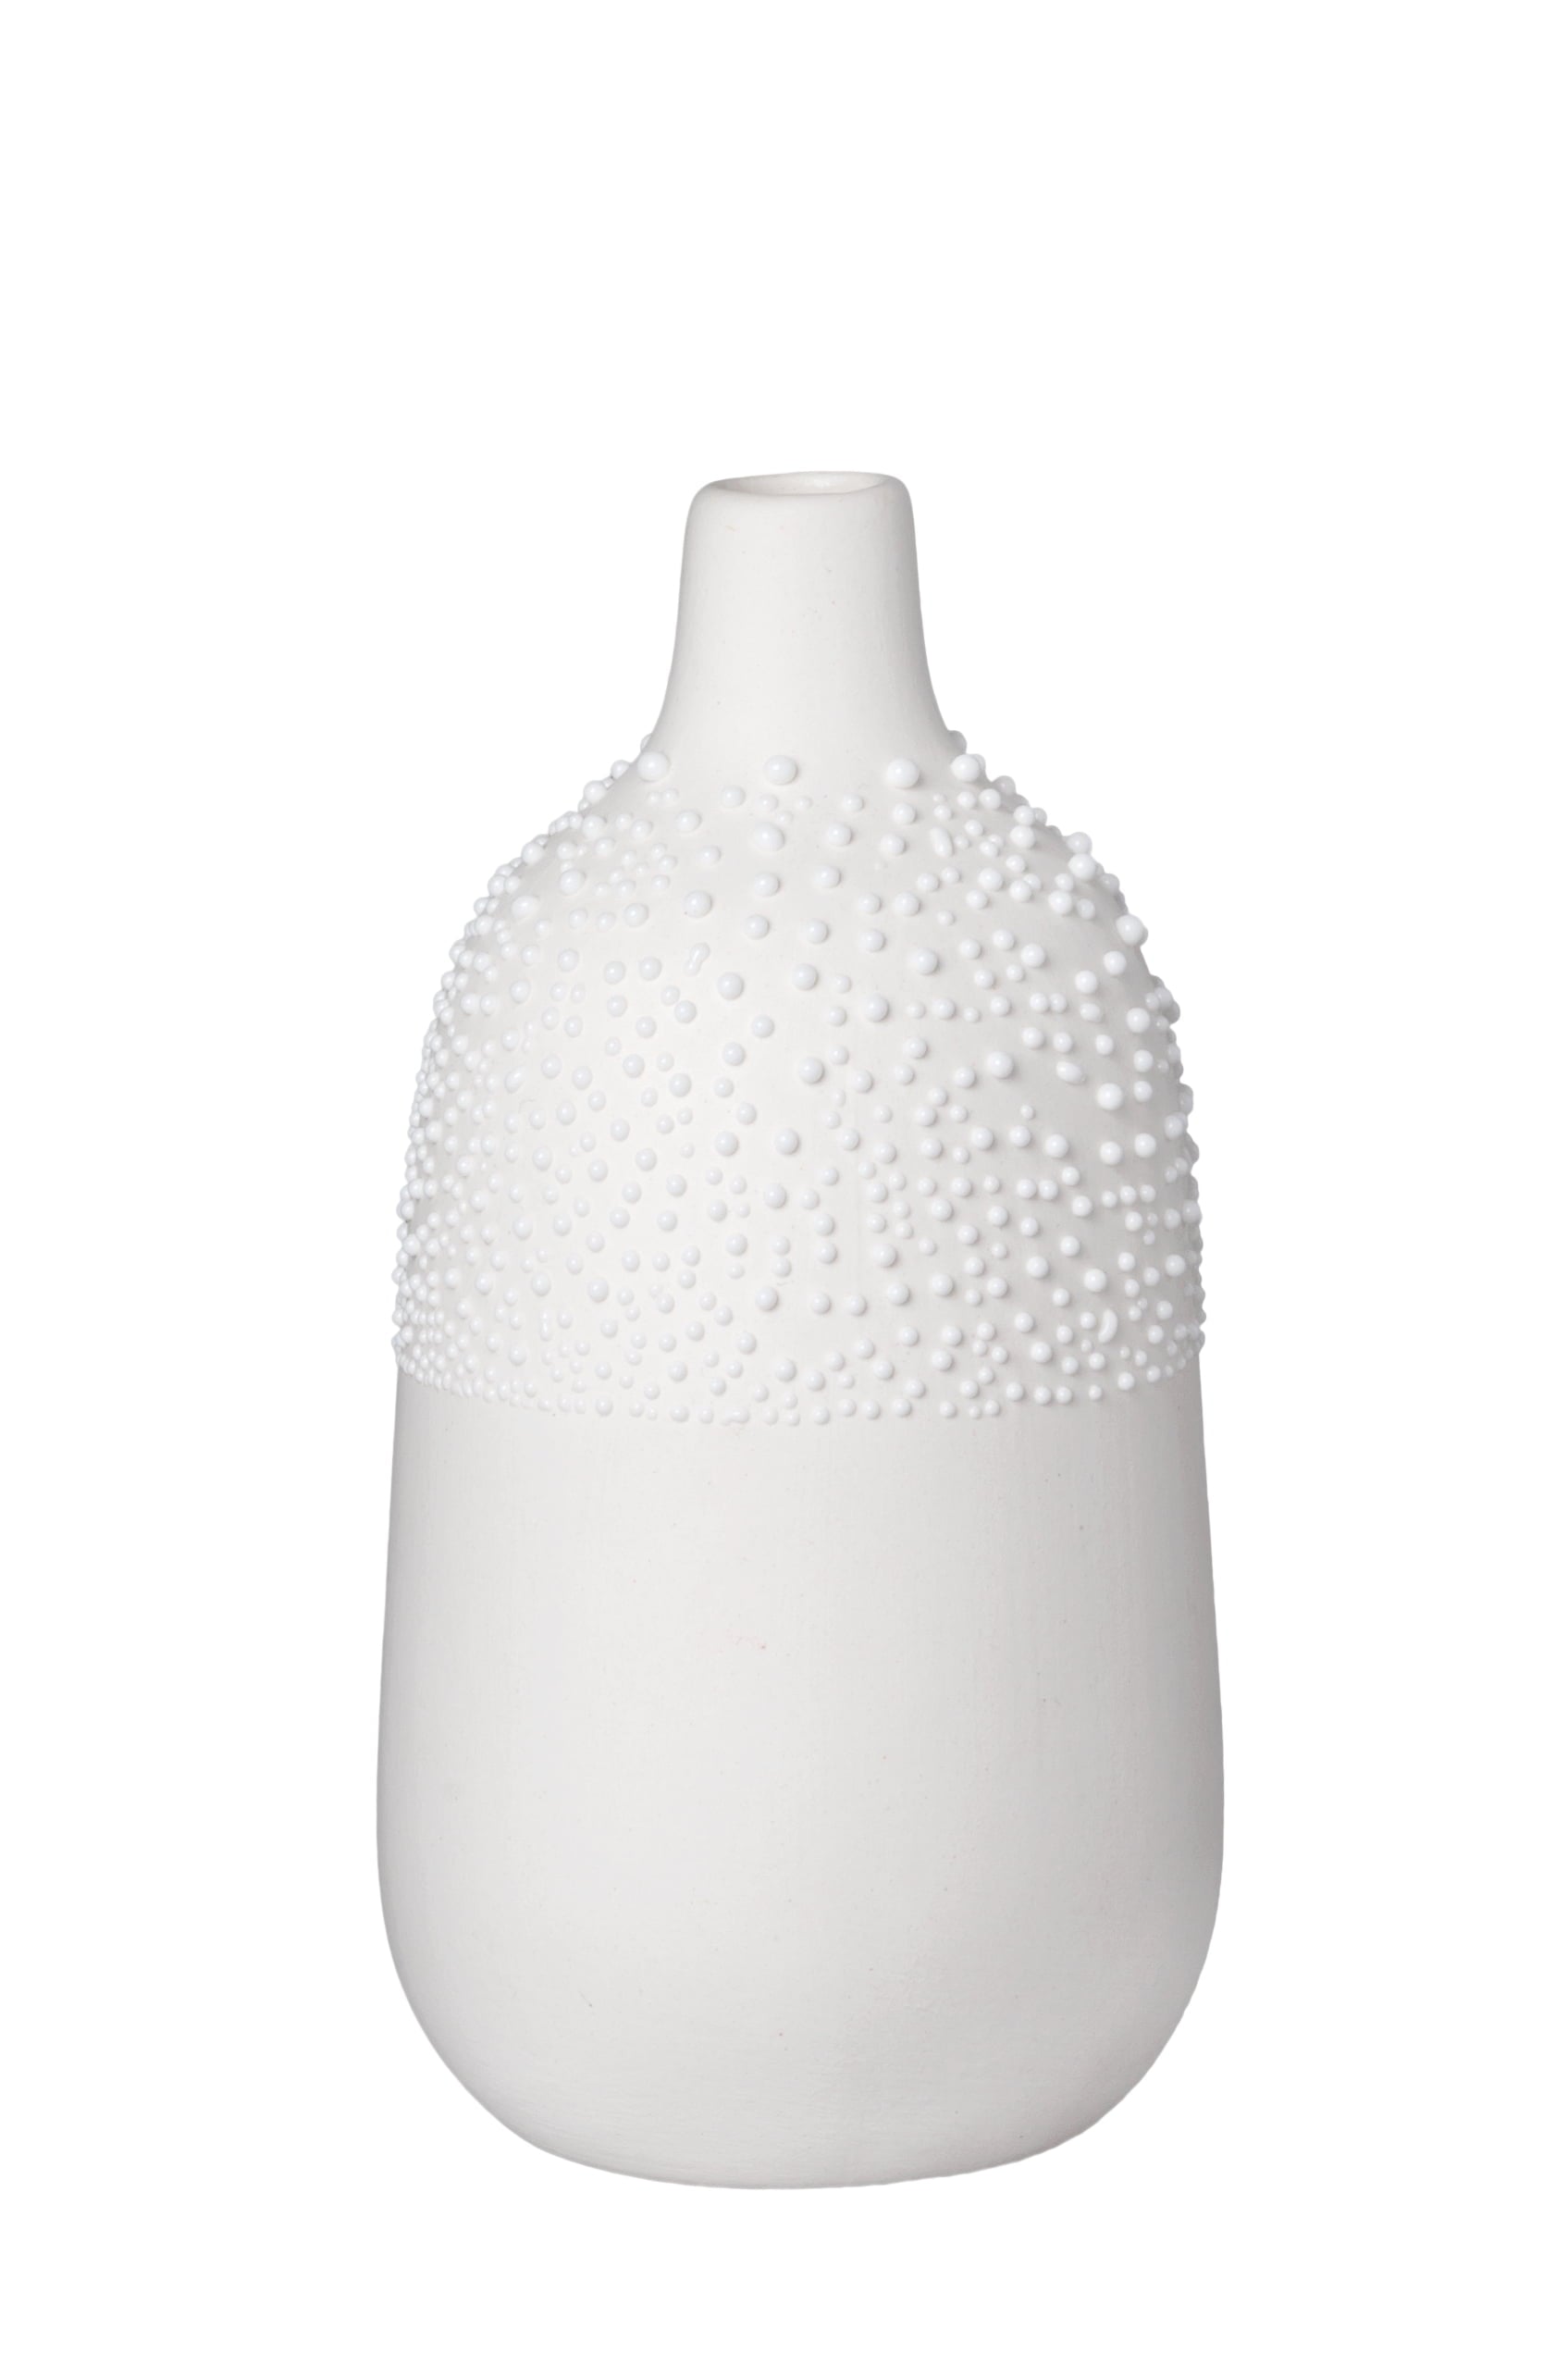 Rader_Pearl Vase Design 4_14380_White_31102021